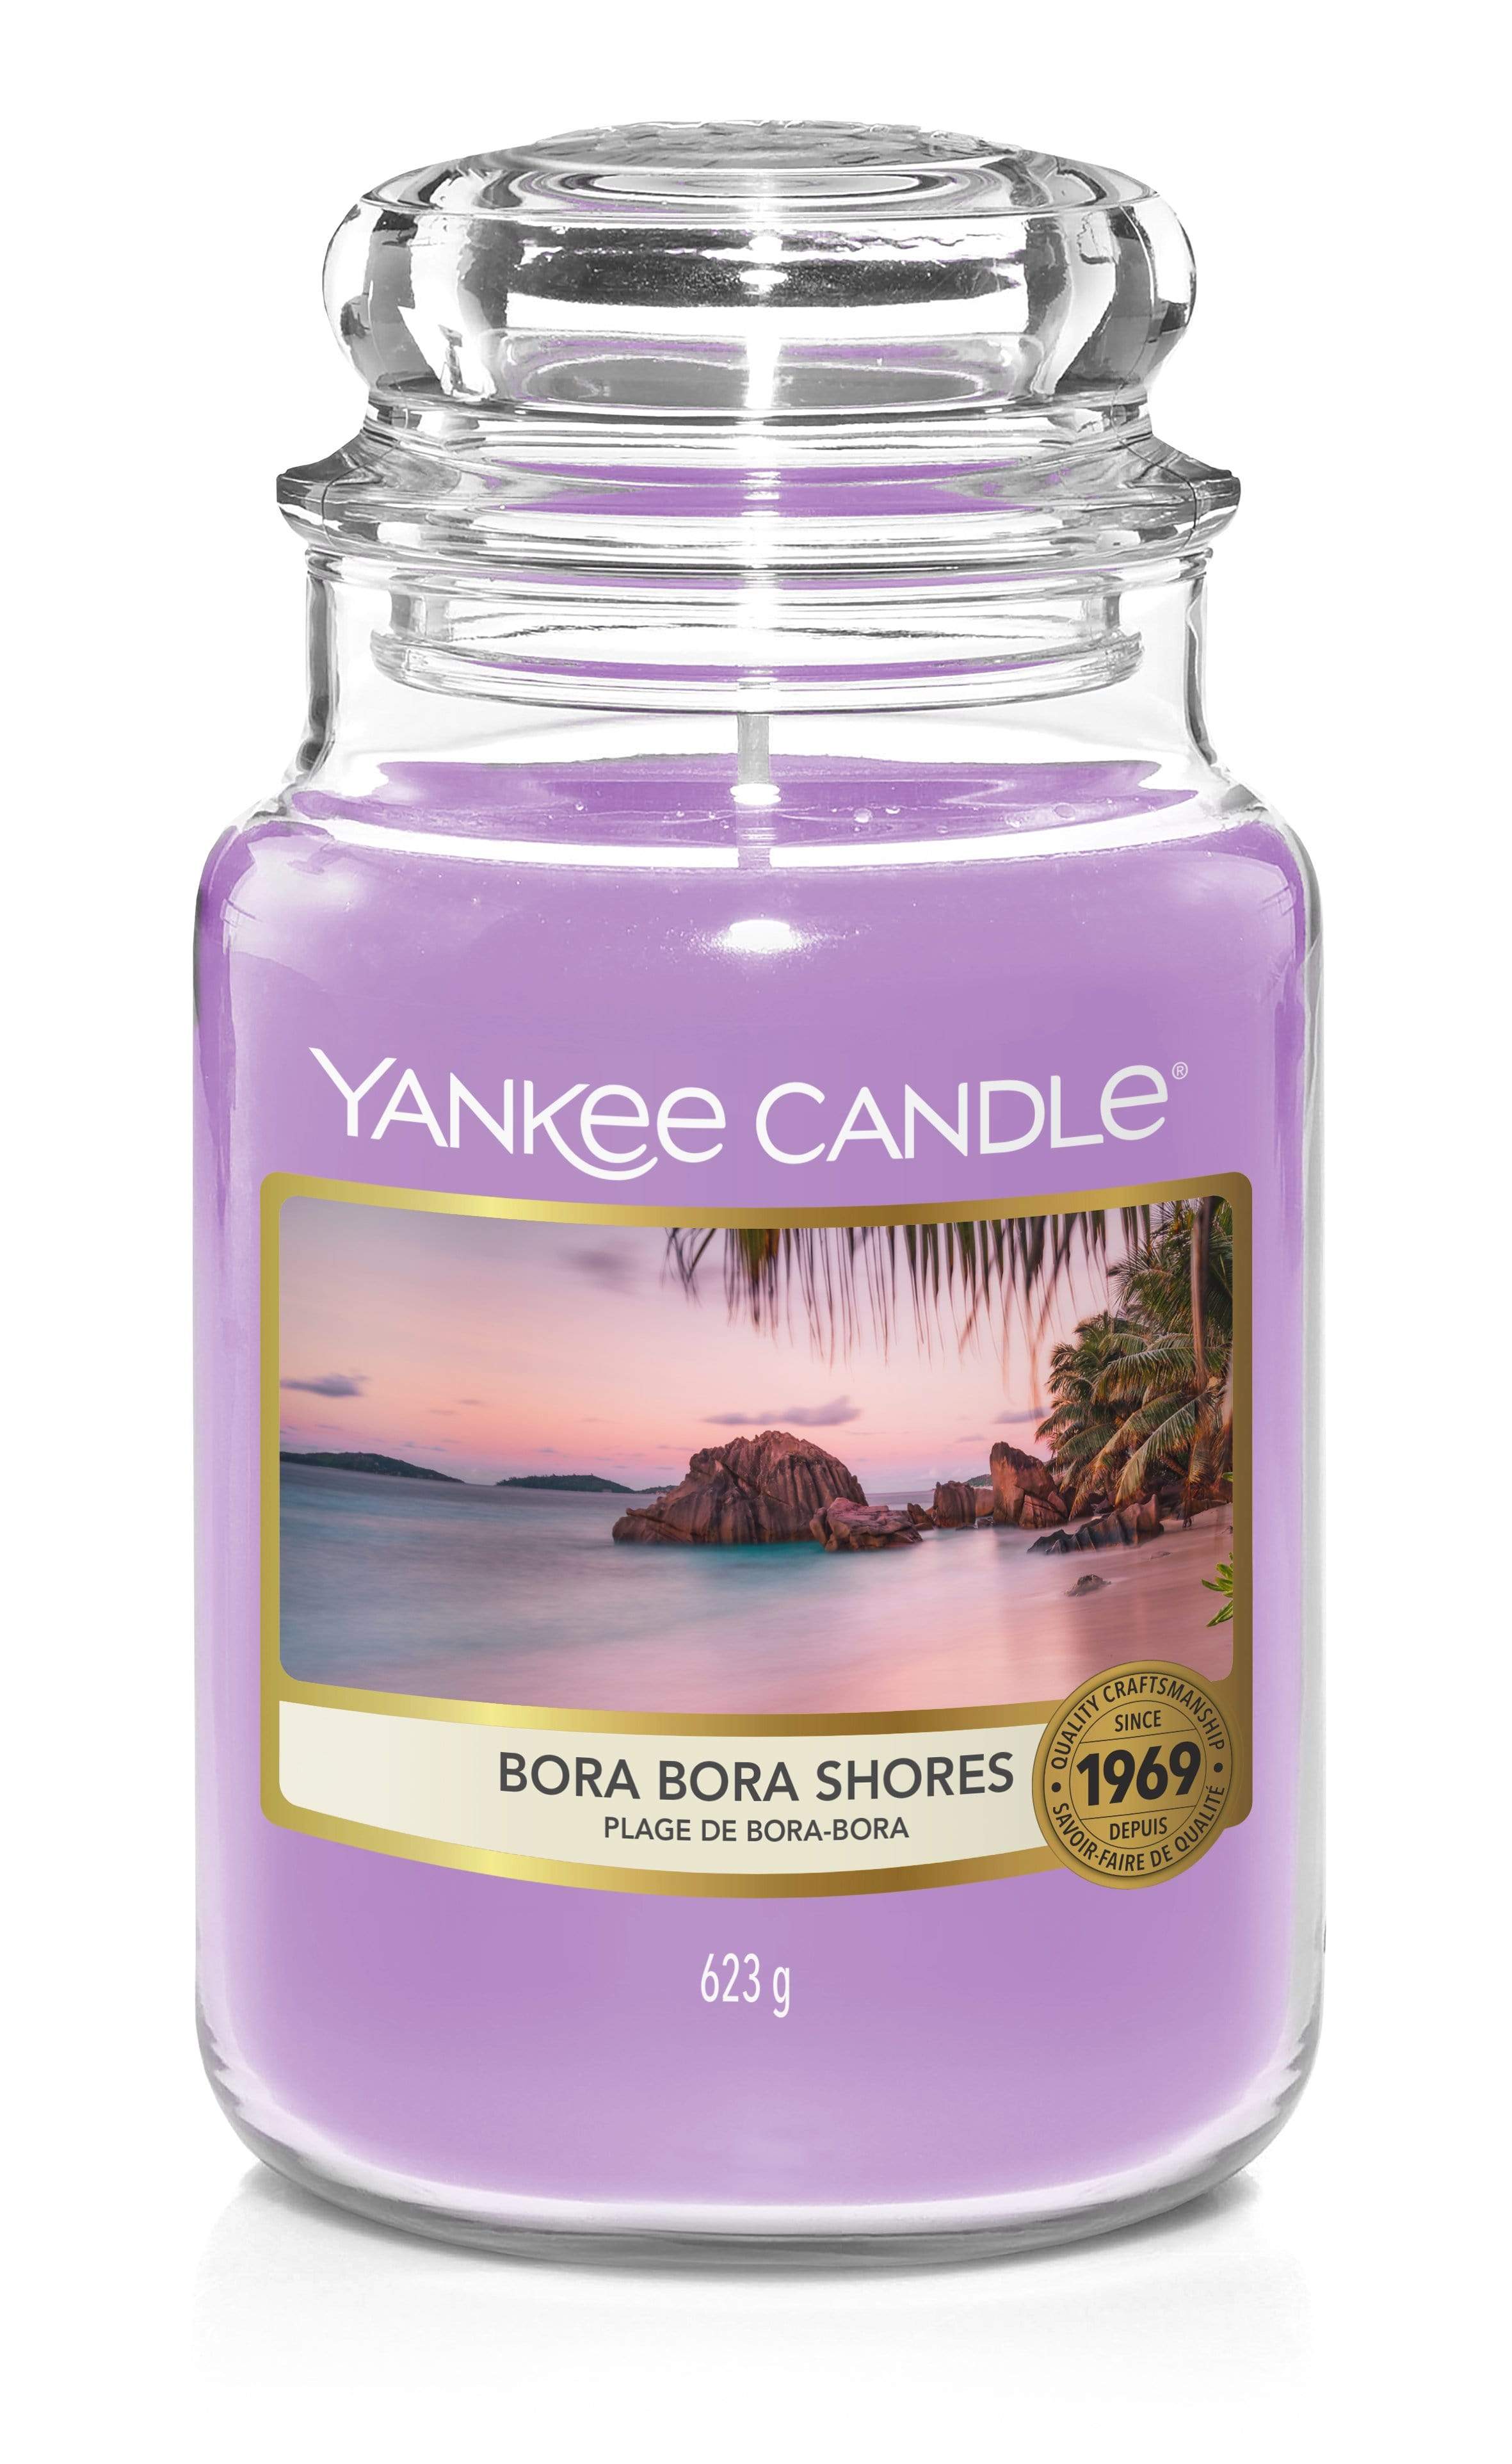 Yankee Candle Large Jar Candle Yankee Candle Large Jar - Bora Bora Shores